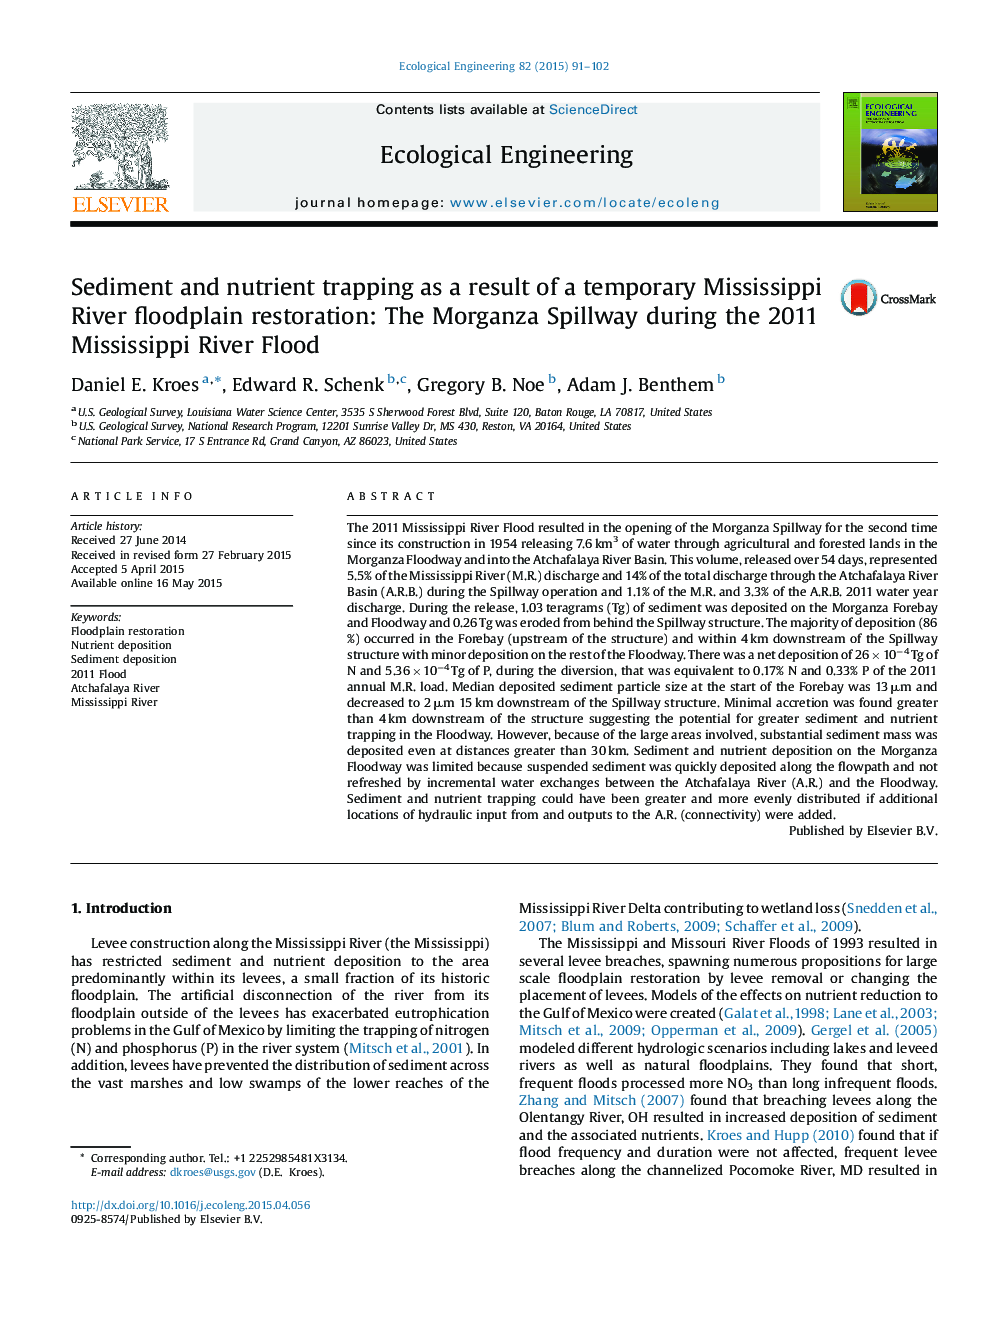 رسوب و تله مواد مغذی به عنوان یک نتیجه از یک موانع استقرار سواحل رودخانه مواصلاتی موقت: سررفت مورگانزا در طول 2011 سیل رودخانه می سی پی 